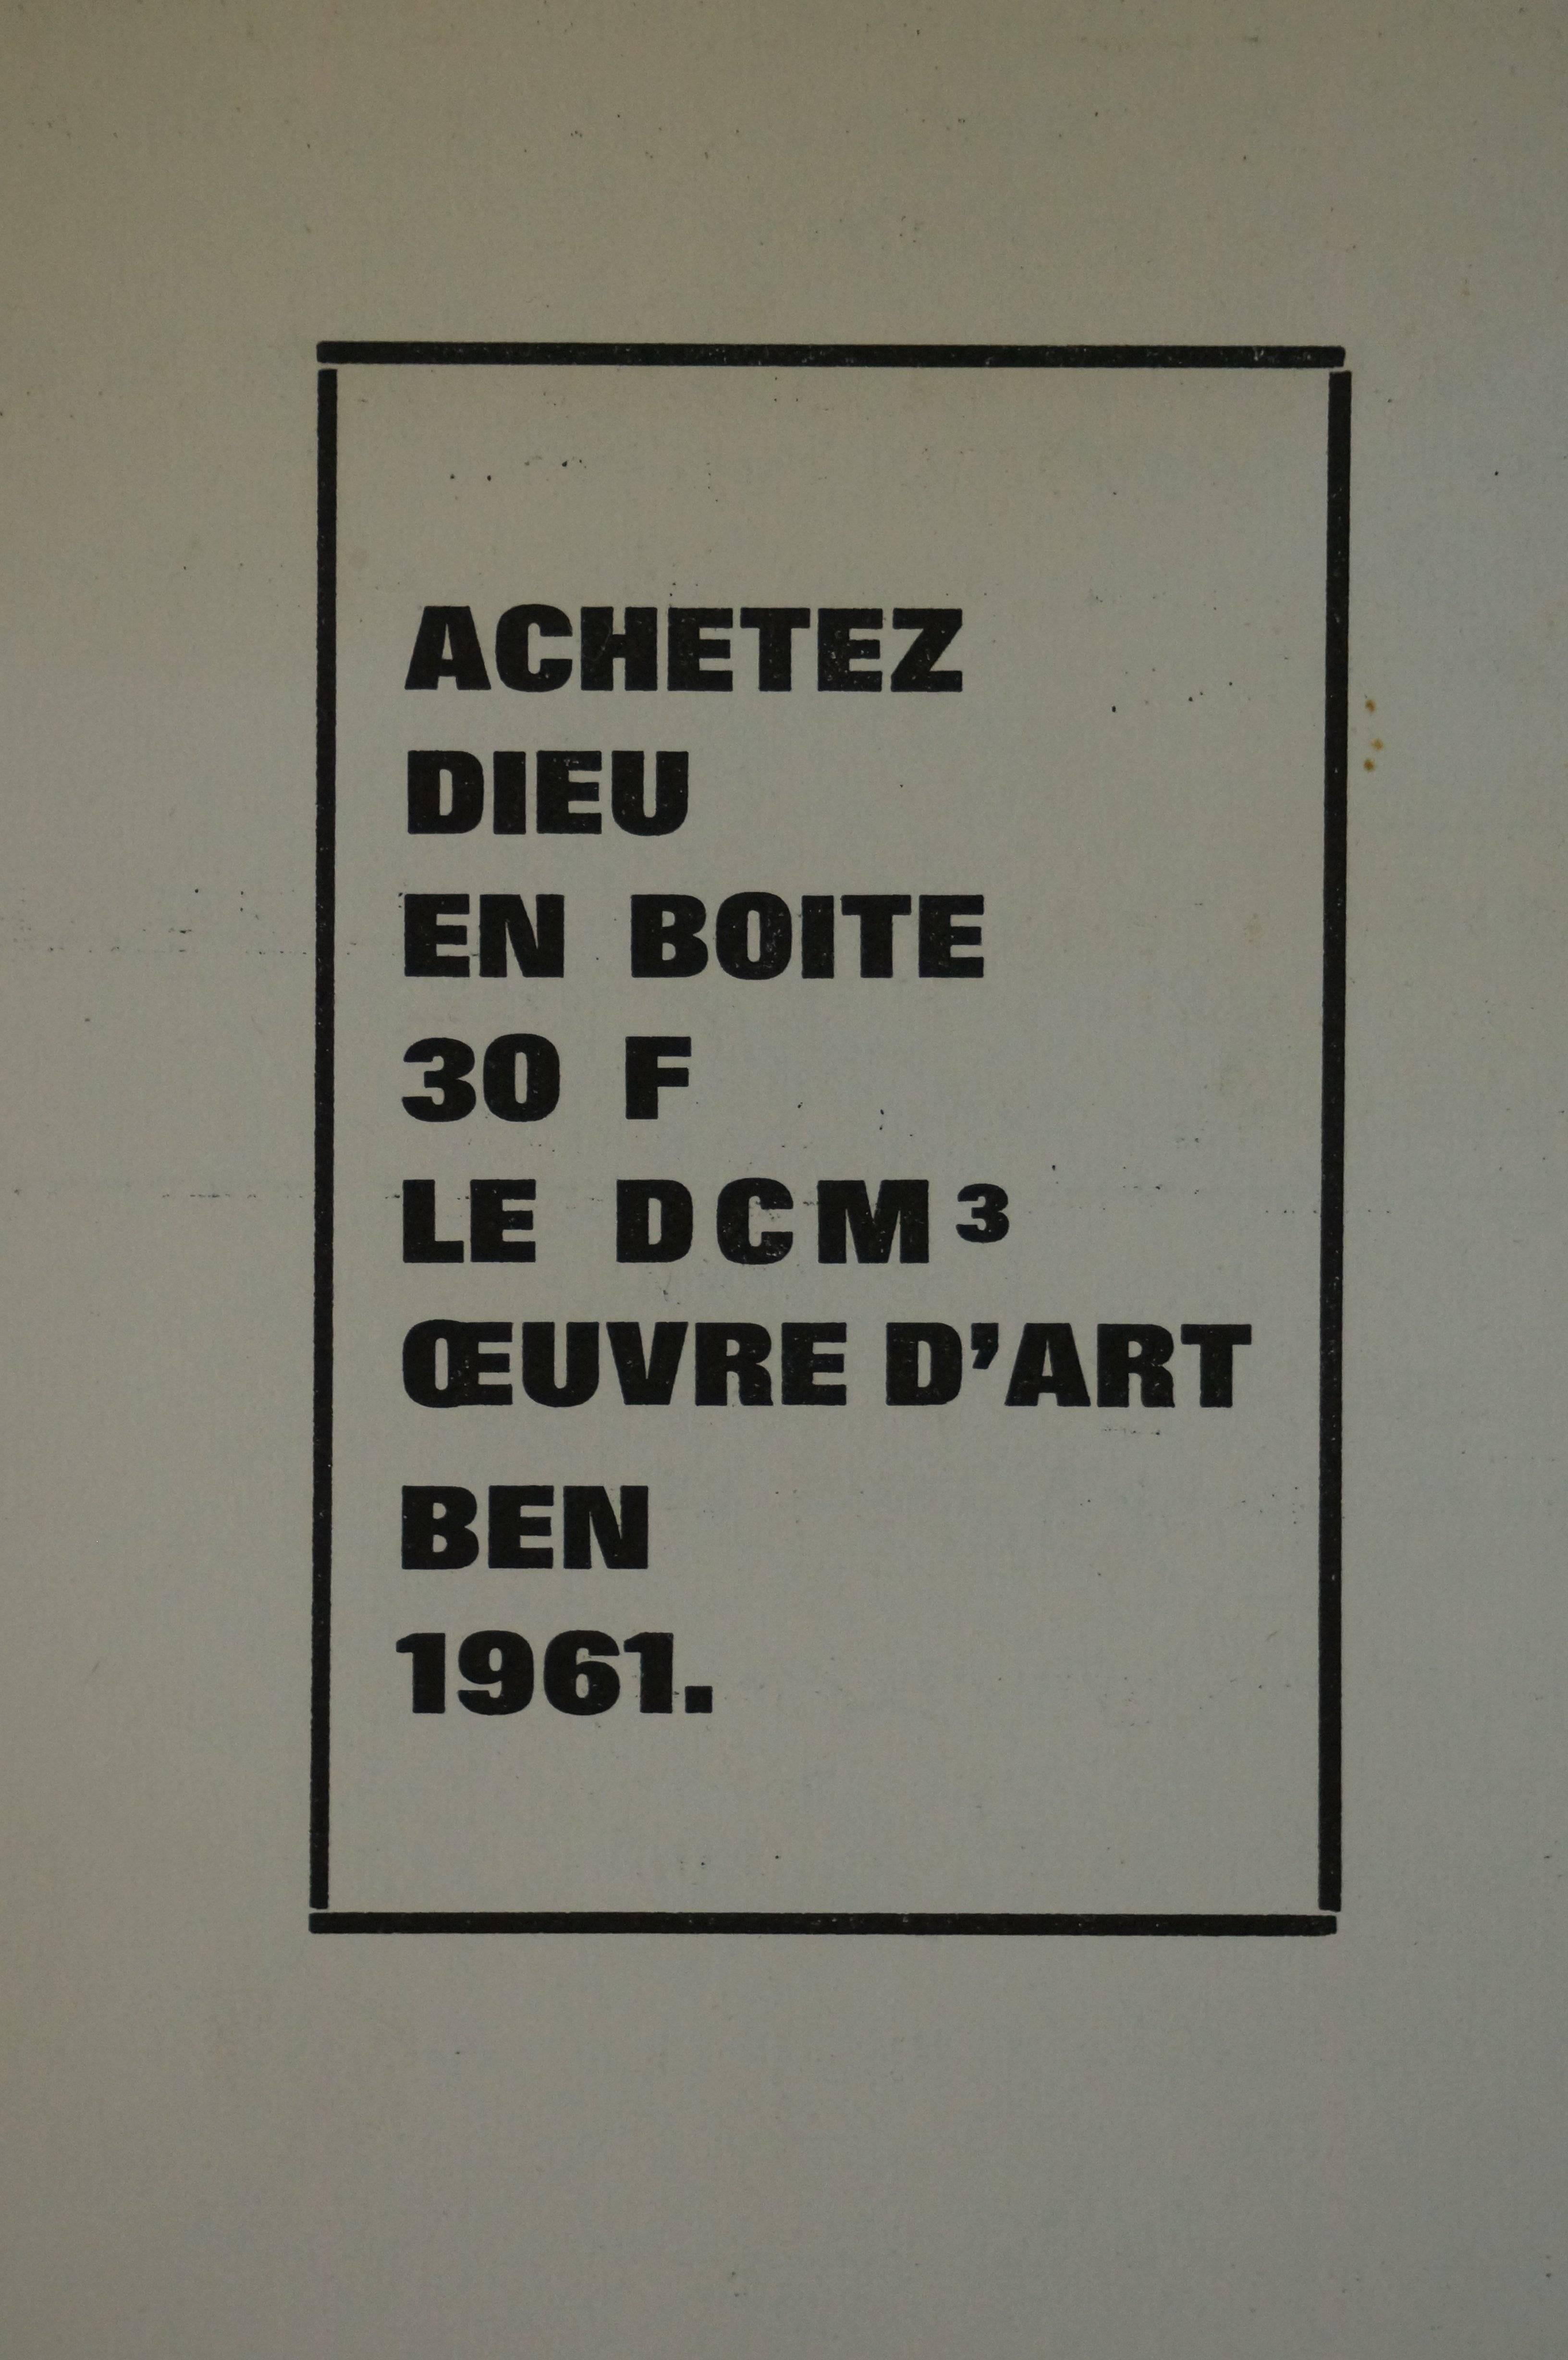 Acheter Dieu, 1961 - mixed media, 44x33 cm, framed - Art by Ben Vautier